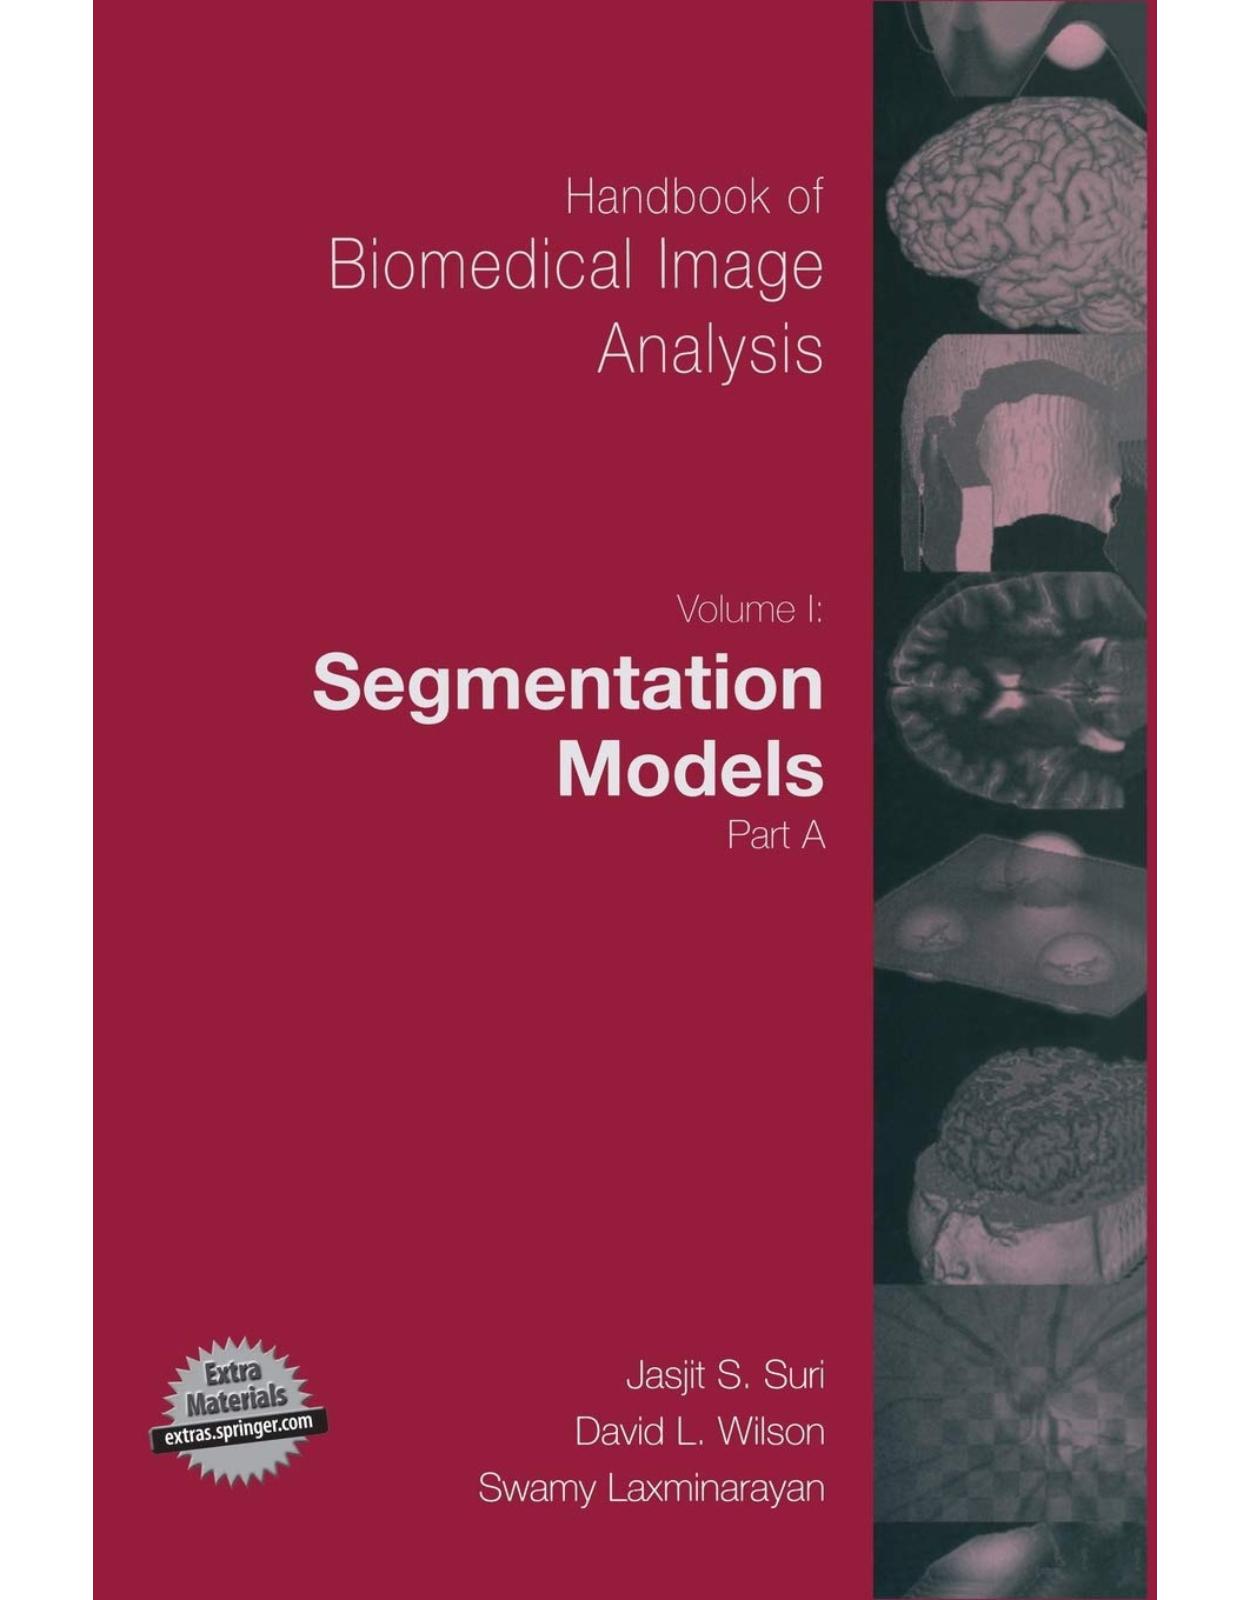 Handbook of Biomedical Image Analysis, Volume 1: Segmentation Models Part A